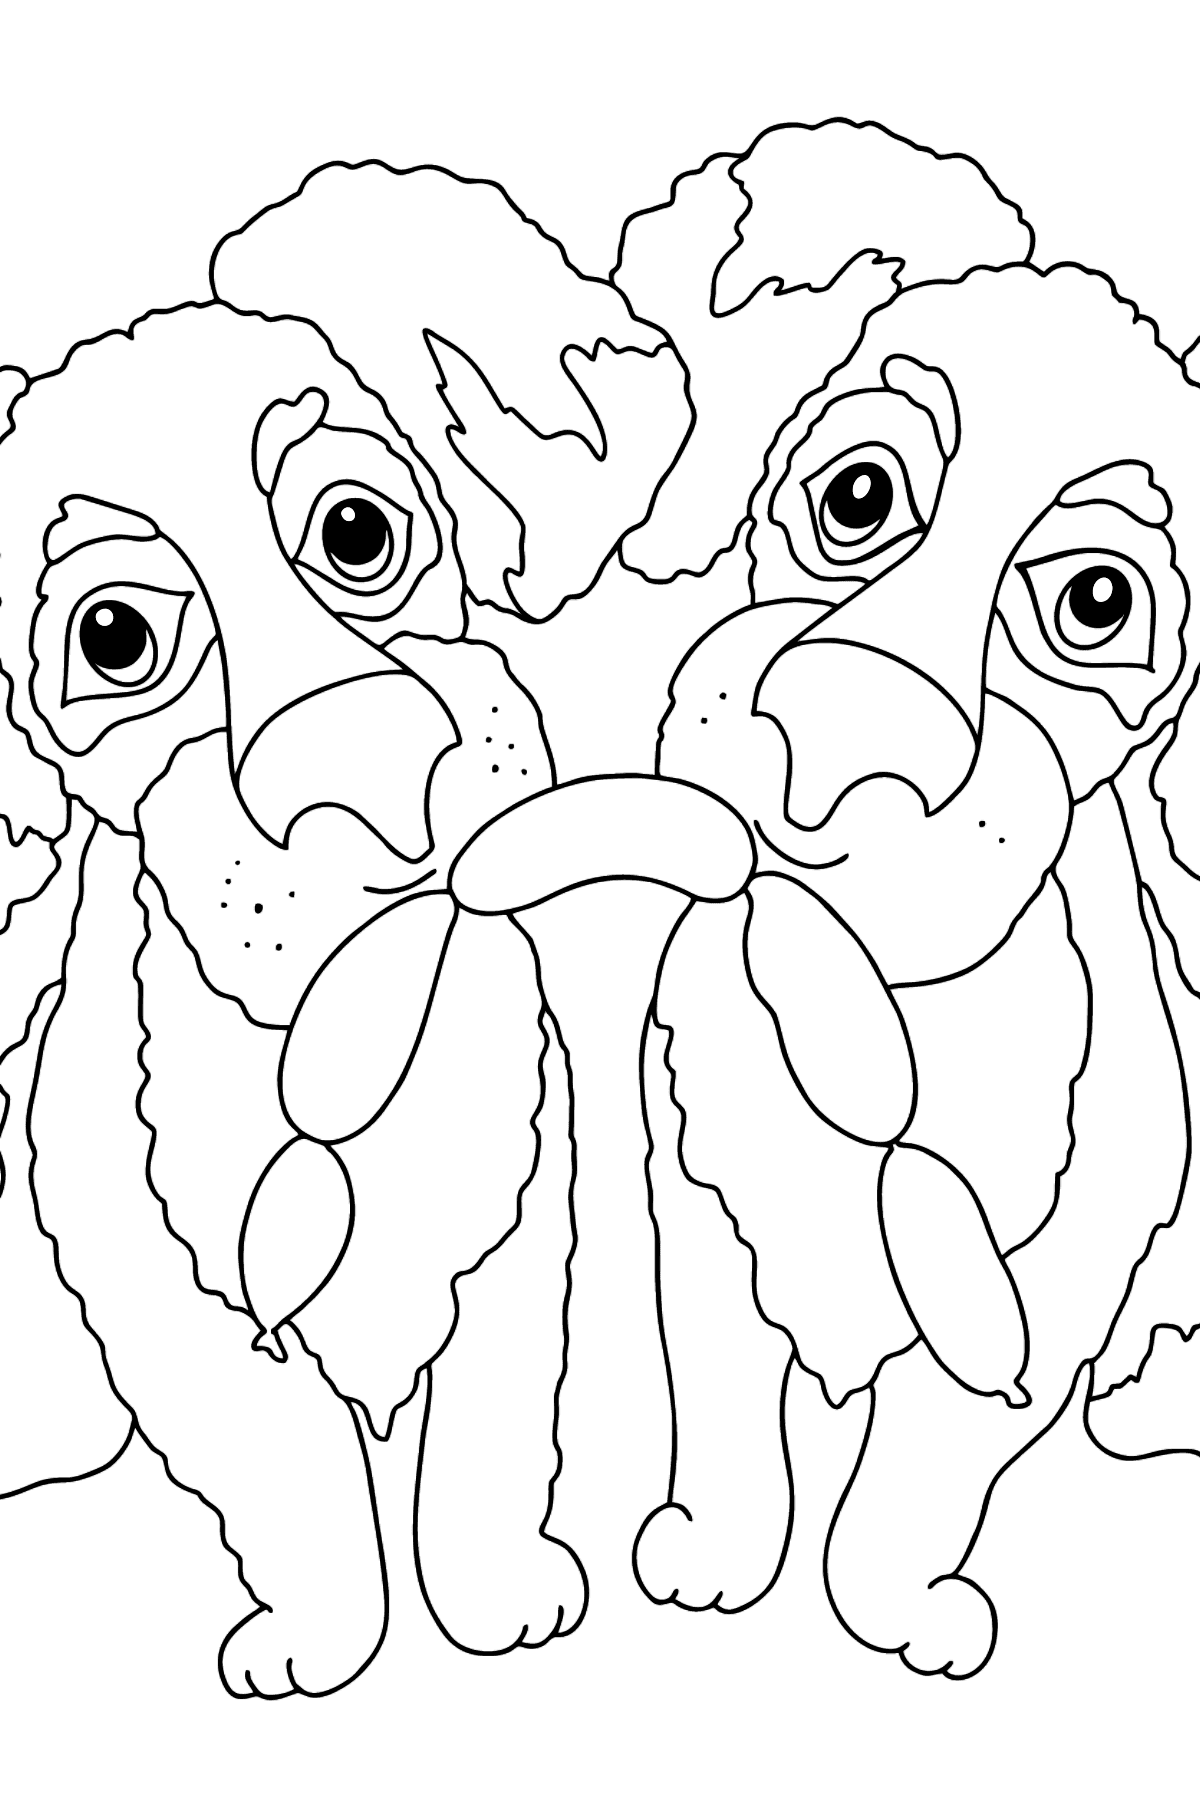 Boyama sayfası komik köpekler (zor) - Boyamalar çocuklar için